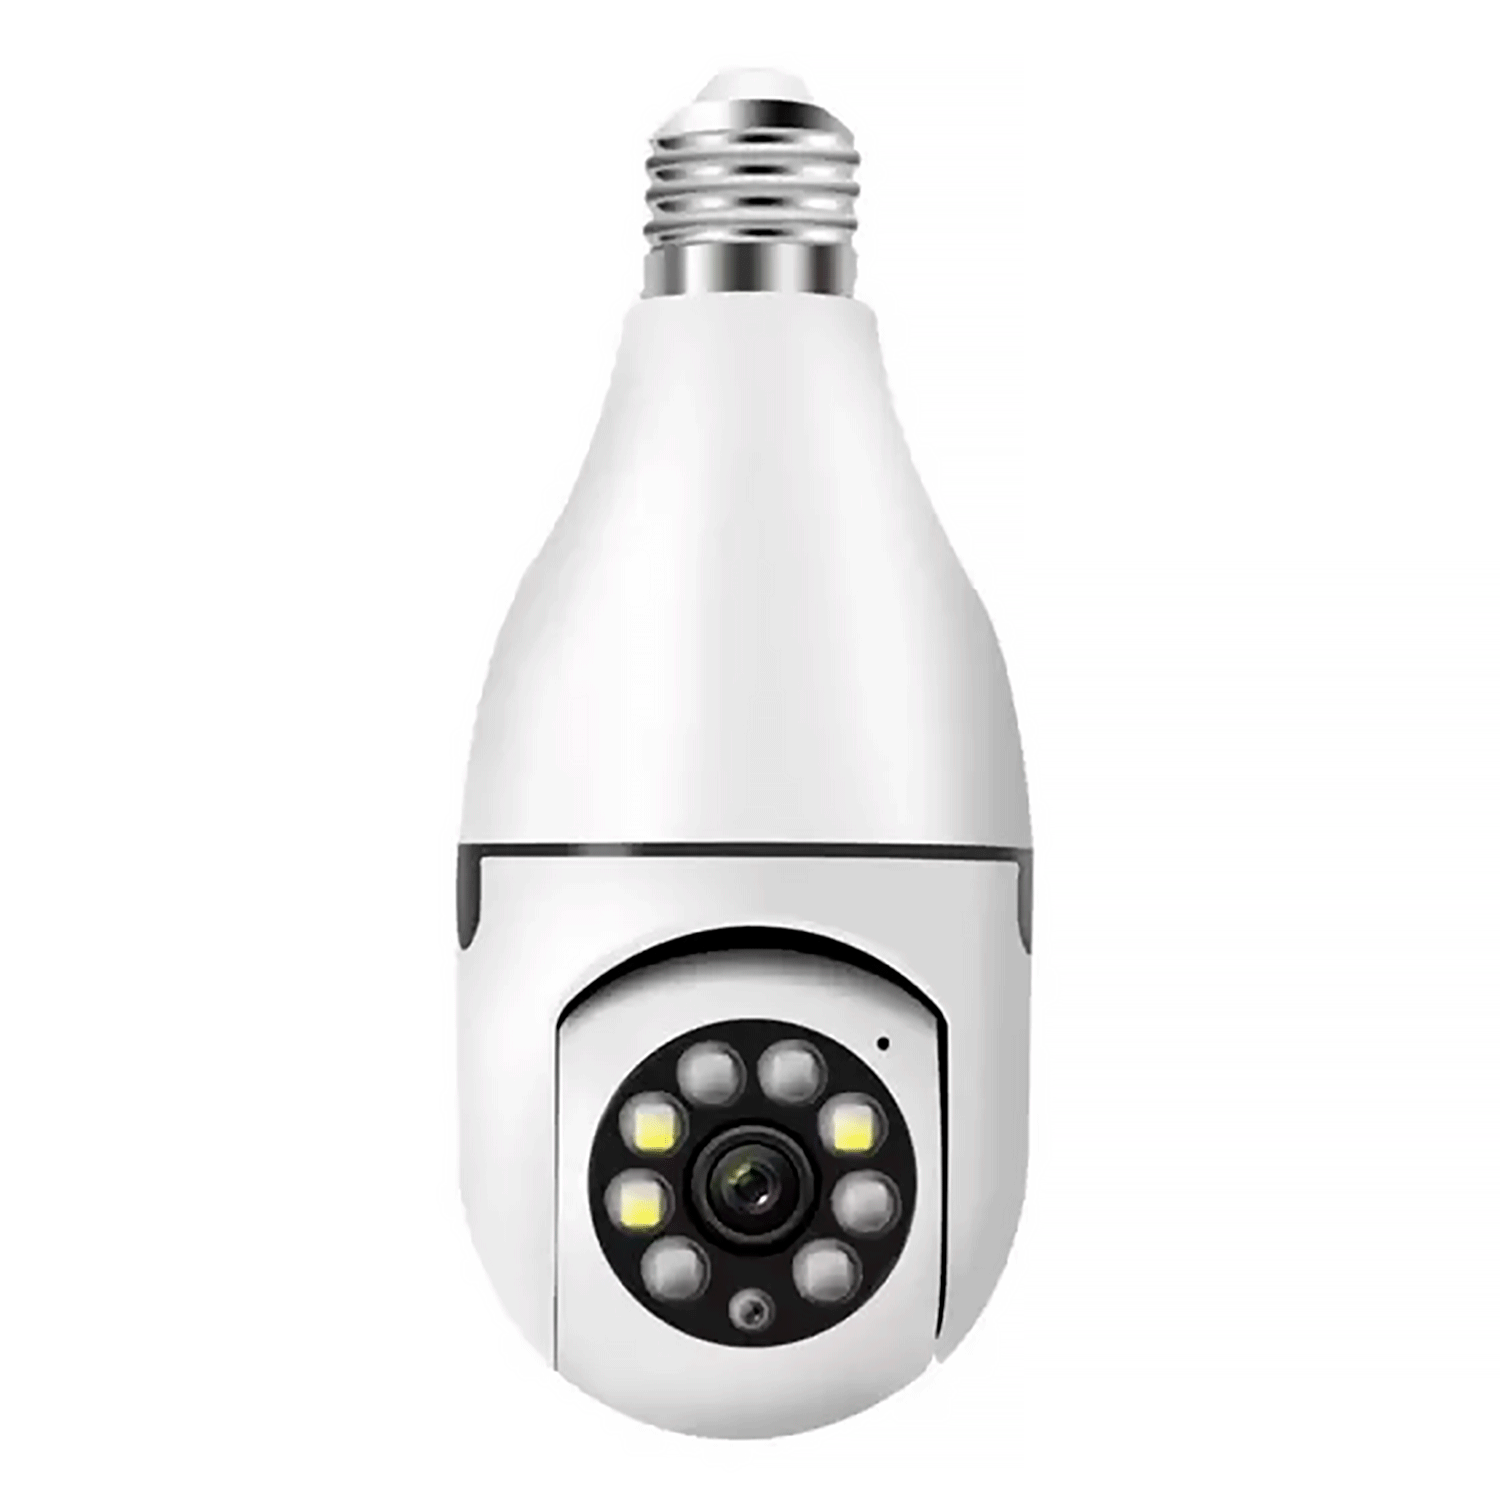 Lâmpada Com Câmera P-02B 2MP / Wifi / Giratório - Branco (APPV380PRO)